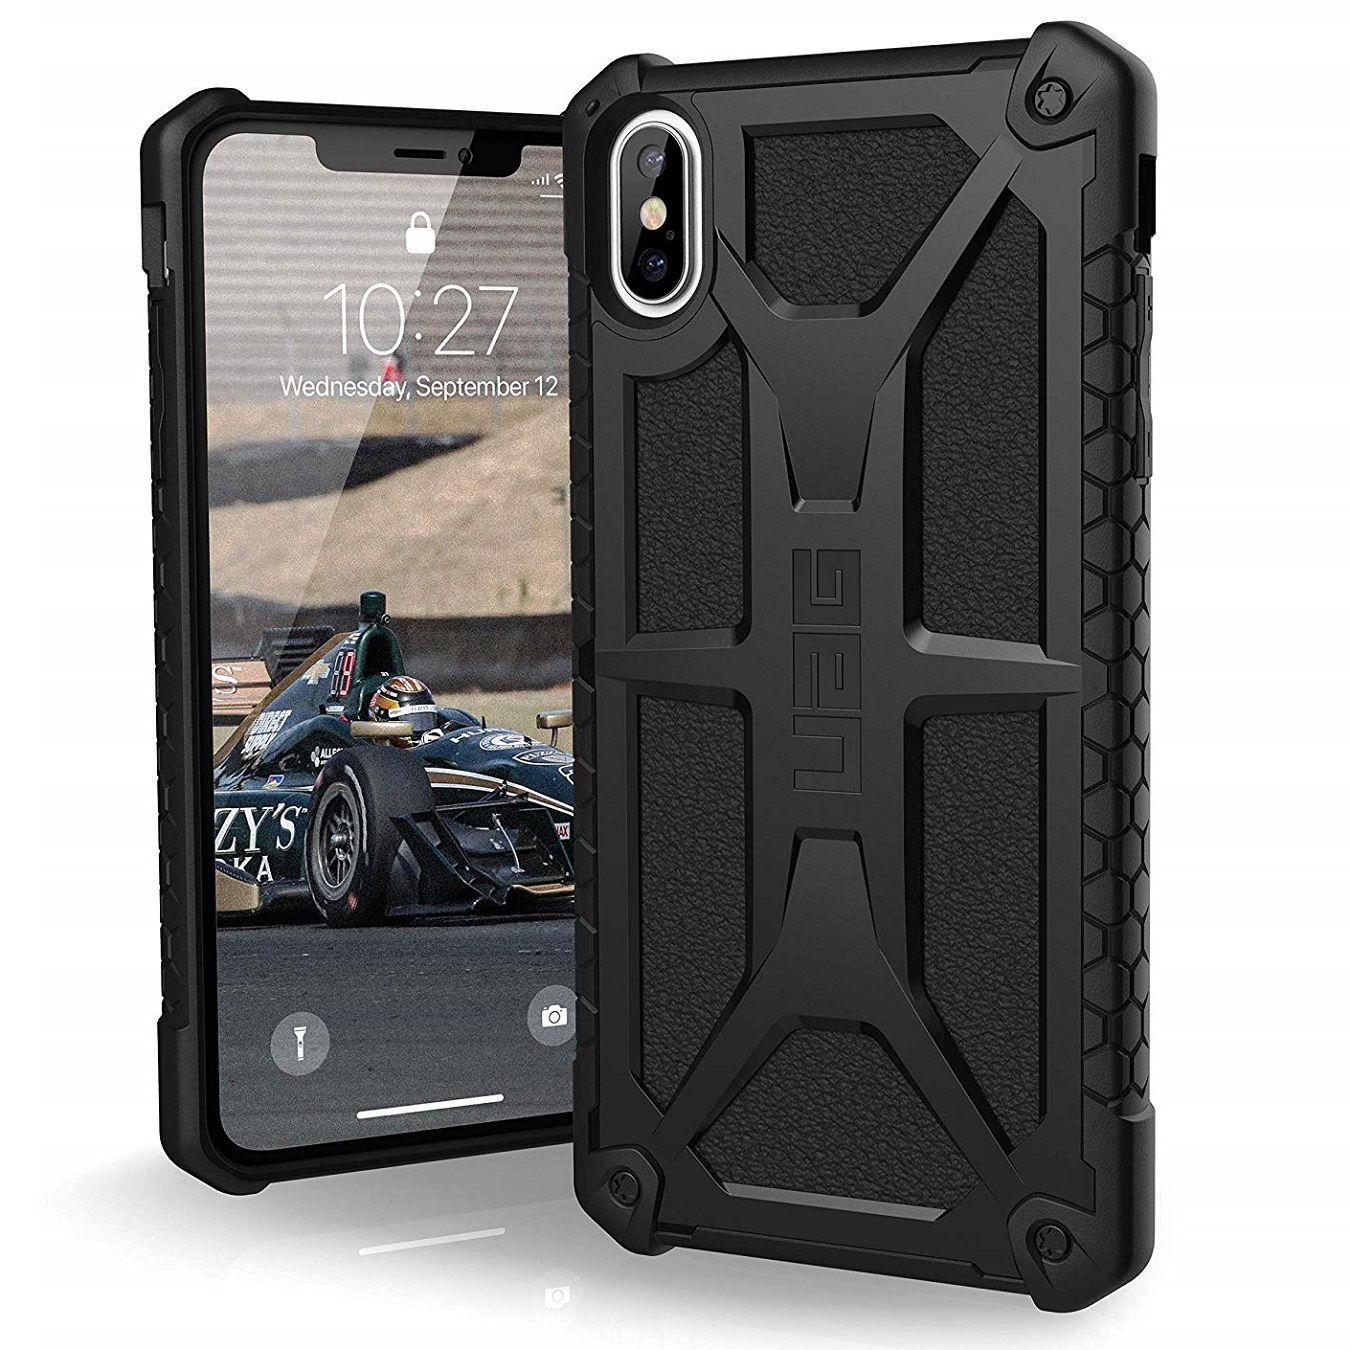 Противоударный защитный чехол UAG Monarch Black Leather для iPhone Xs Max